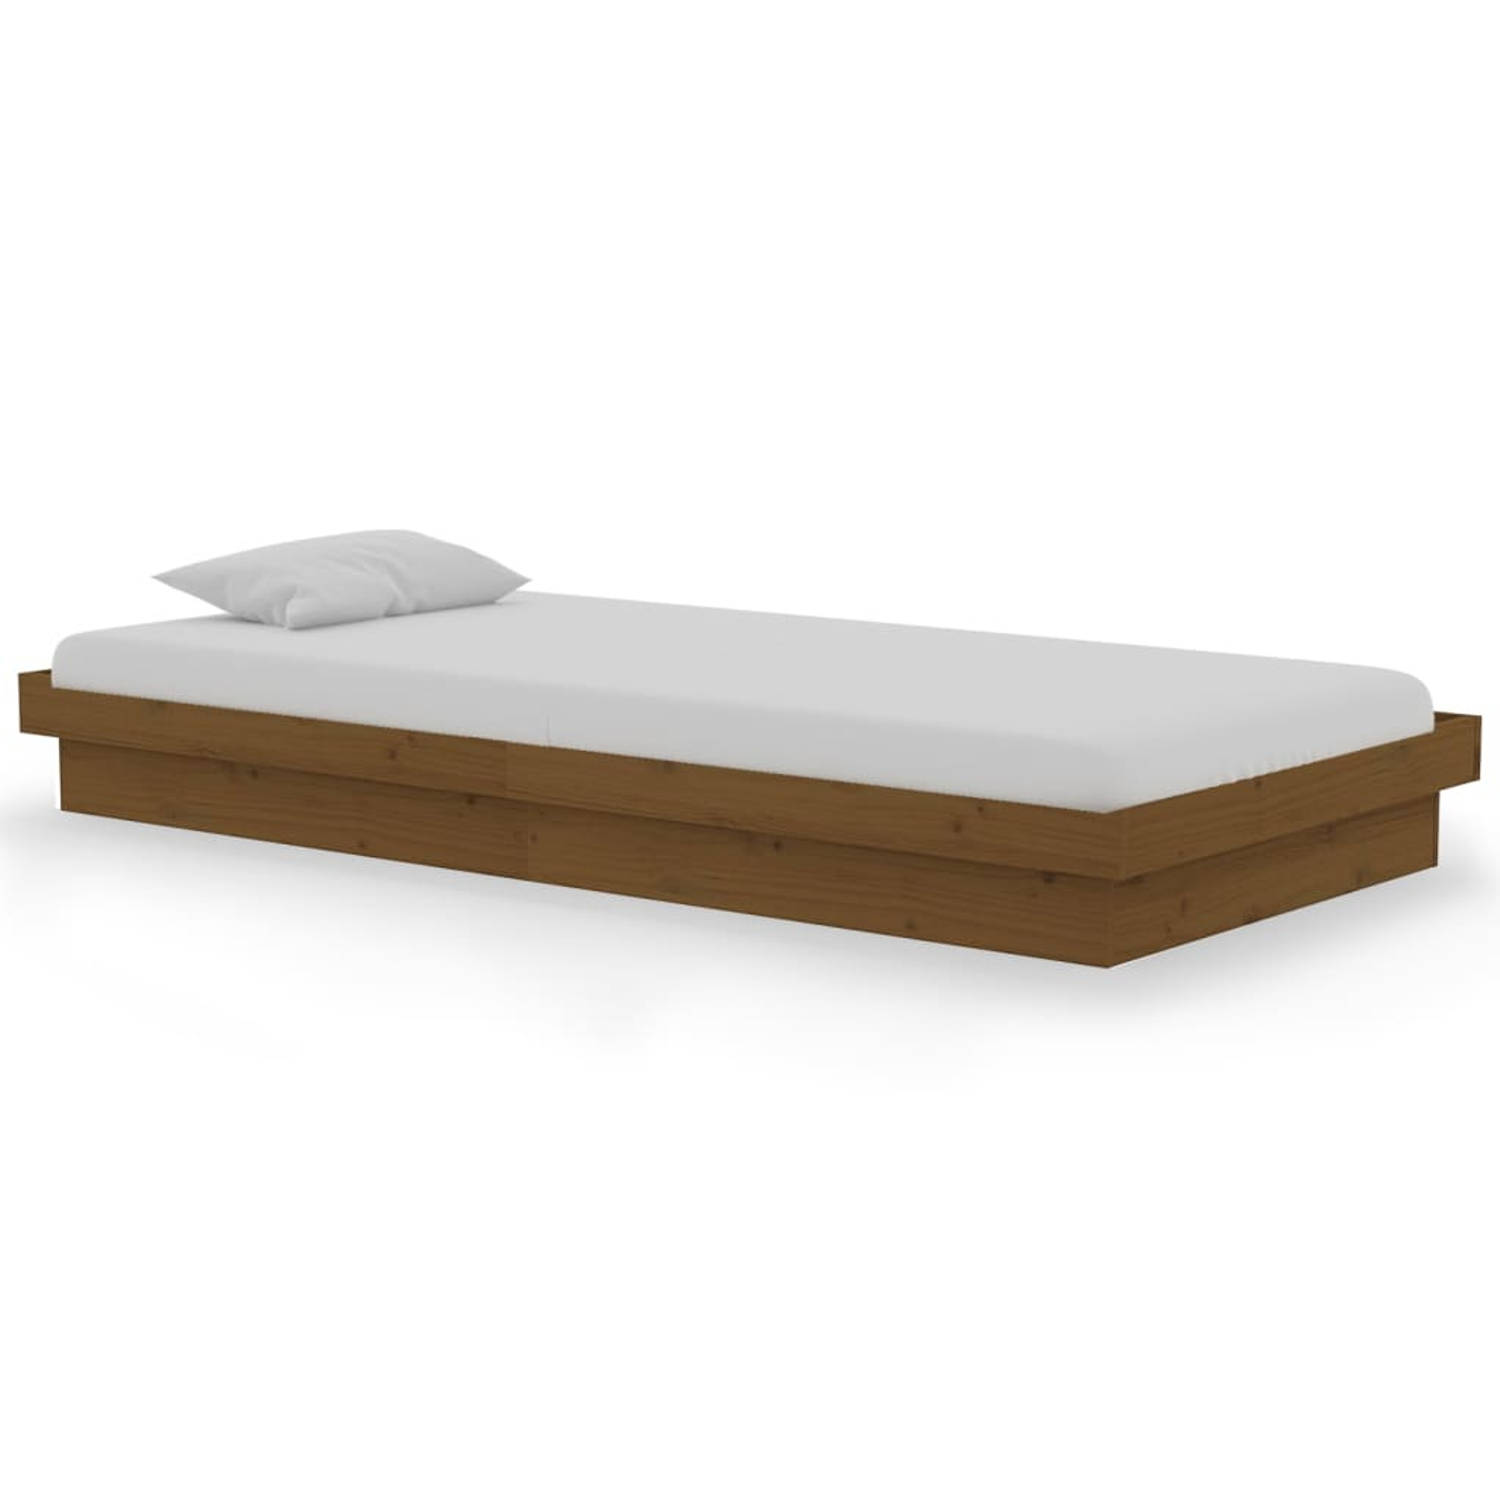 The Living Store Bedframe massief hout honingbruin 90x190 cm 3FT Single - Bedframe - Bedframes - Eenpersoonsbed - Bed - Bedombouw - Ledikant - Houten Bedframe - Eenpersoonsbedden -